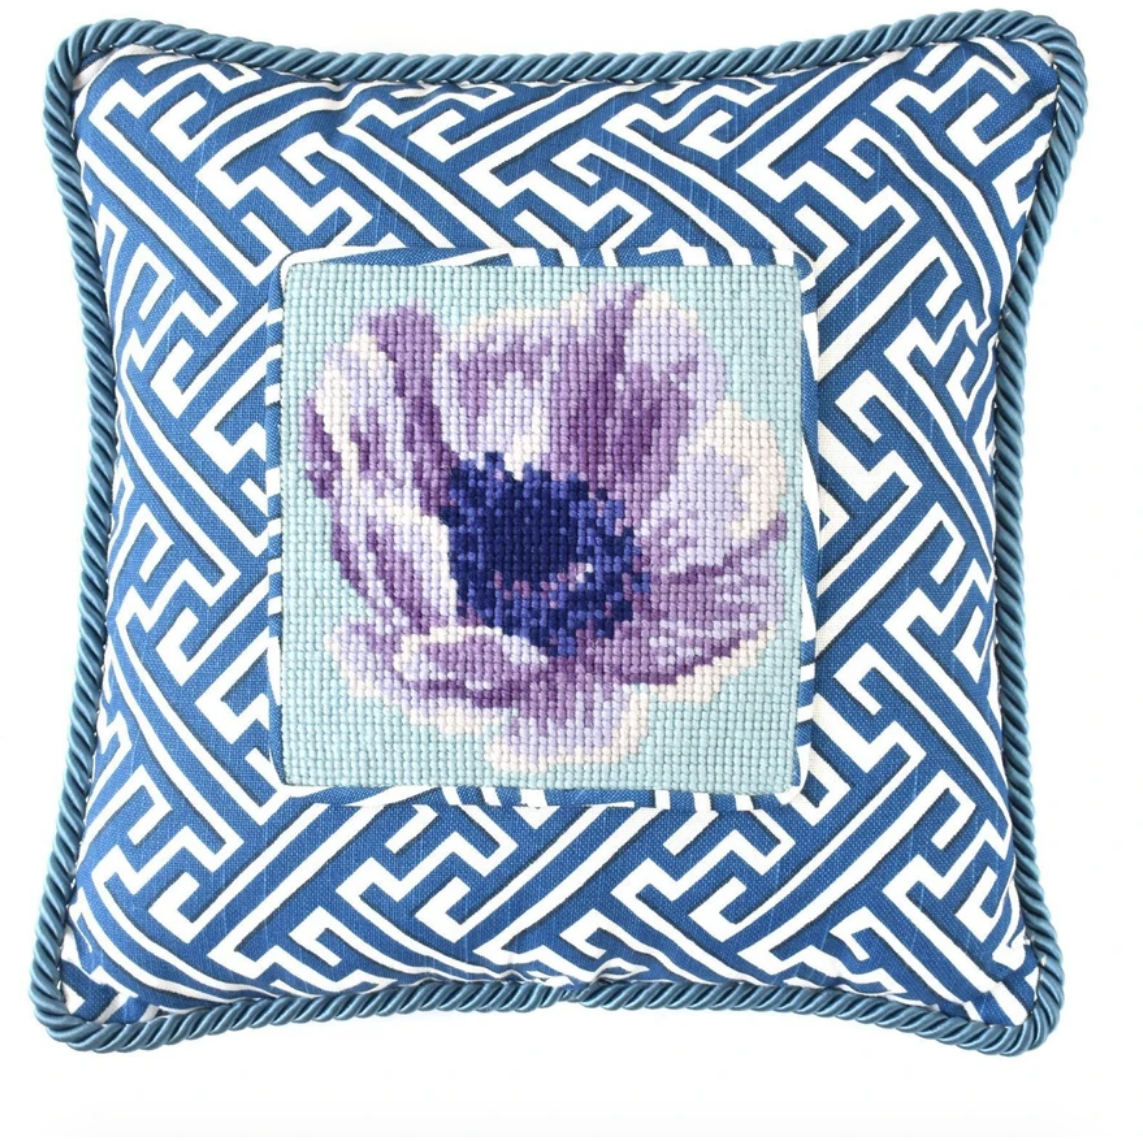 Elizabeth Bradley ~ Anemone Mini Needlepoint Tapestry Kit